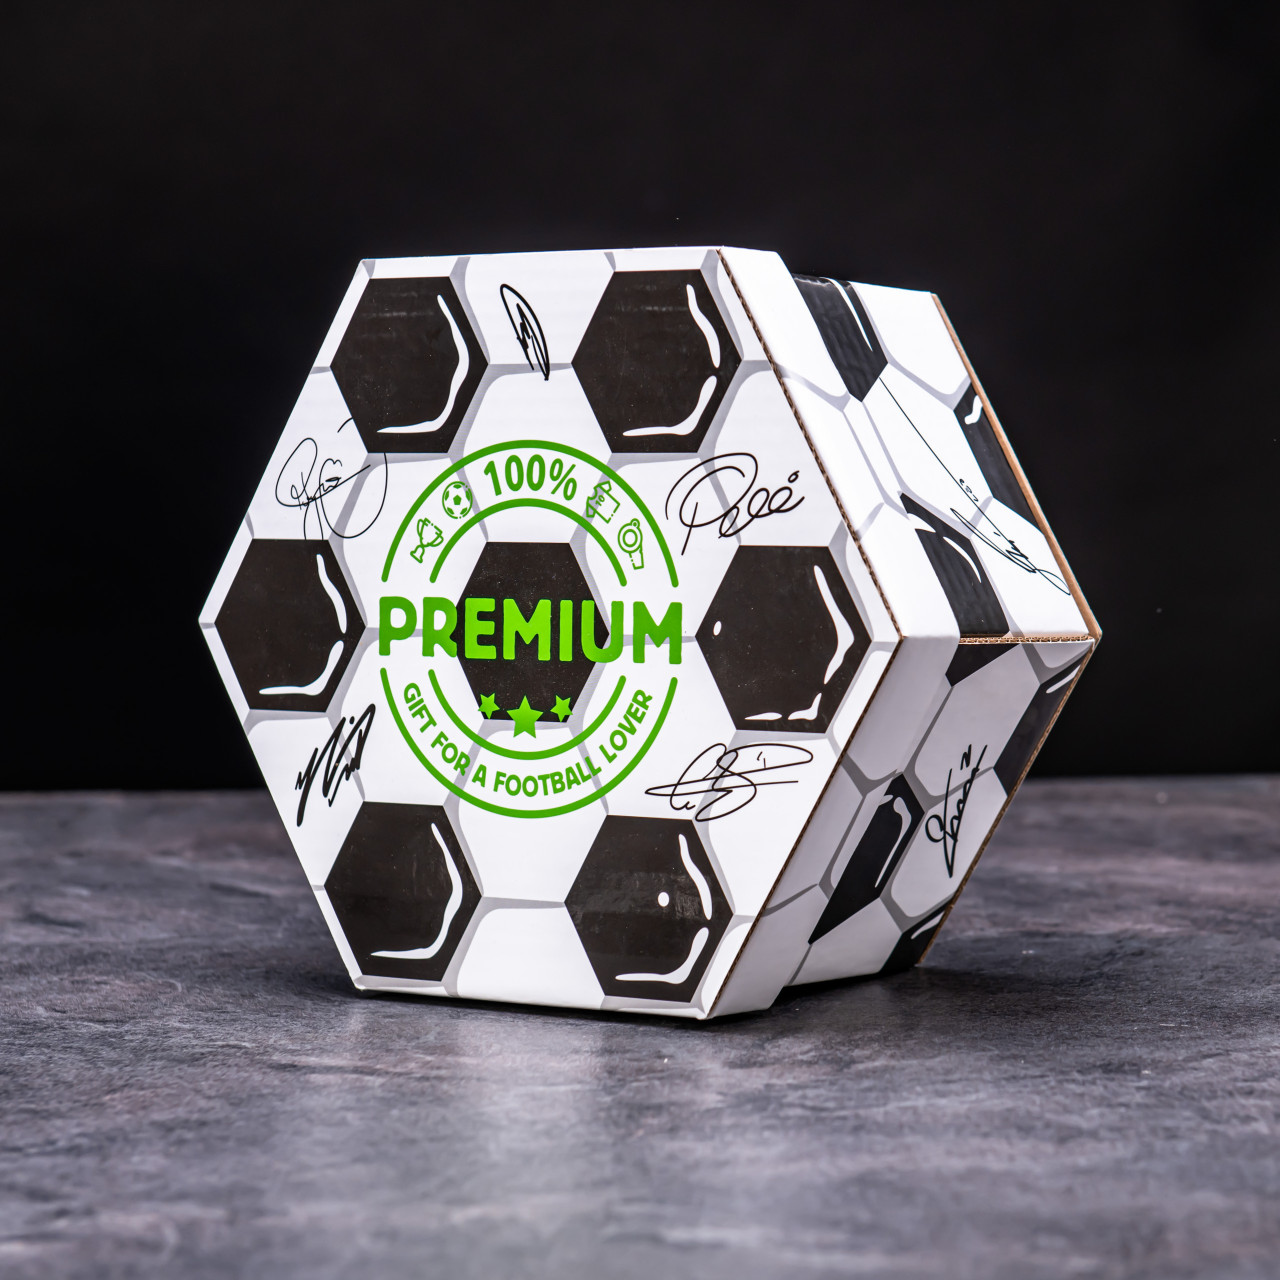 Hexagon plný kvalitních čajů - Fotbalový